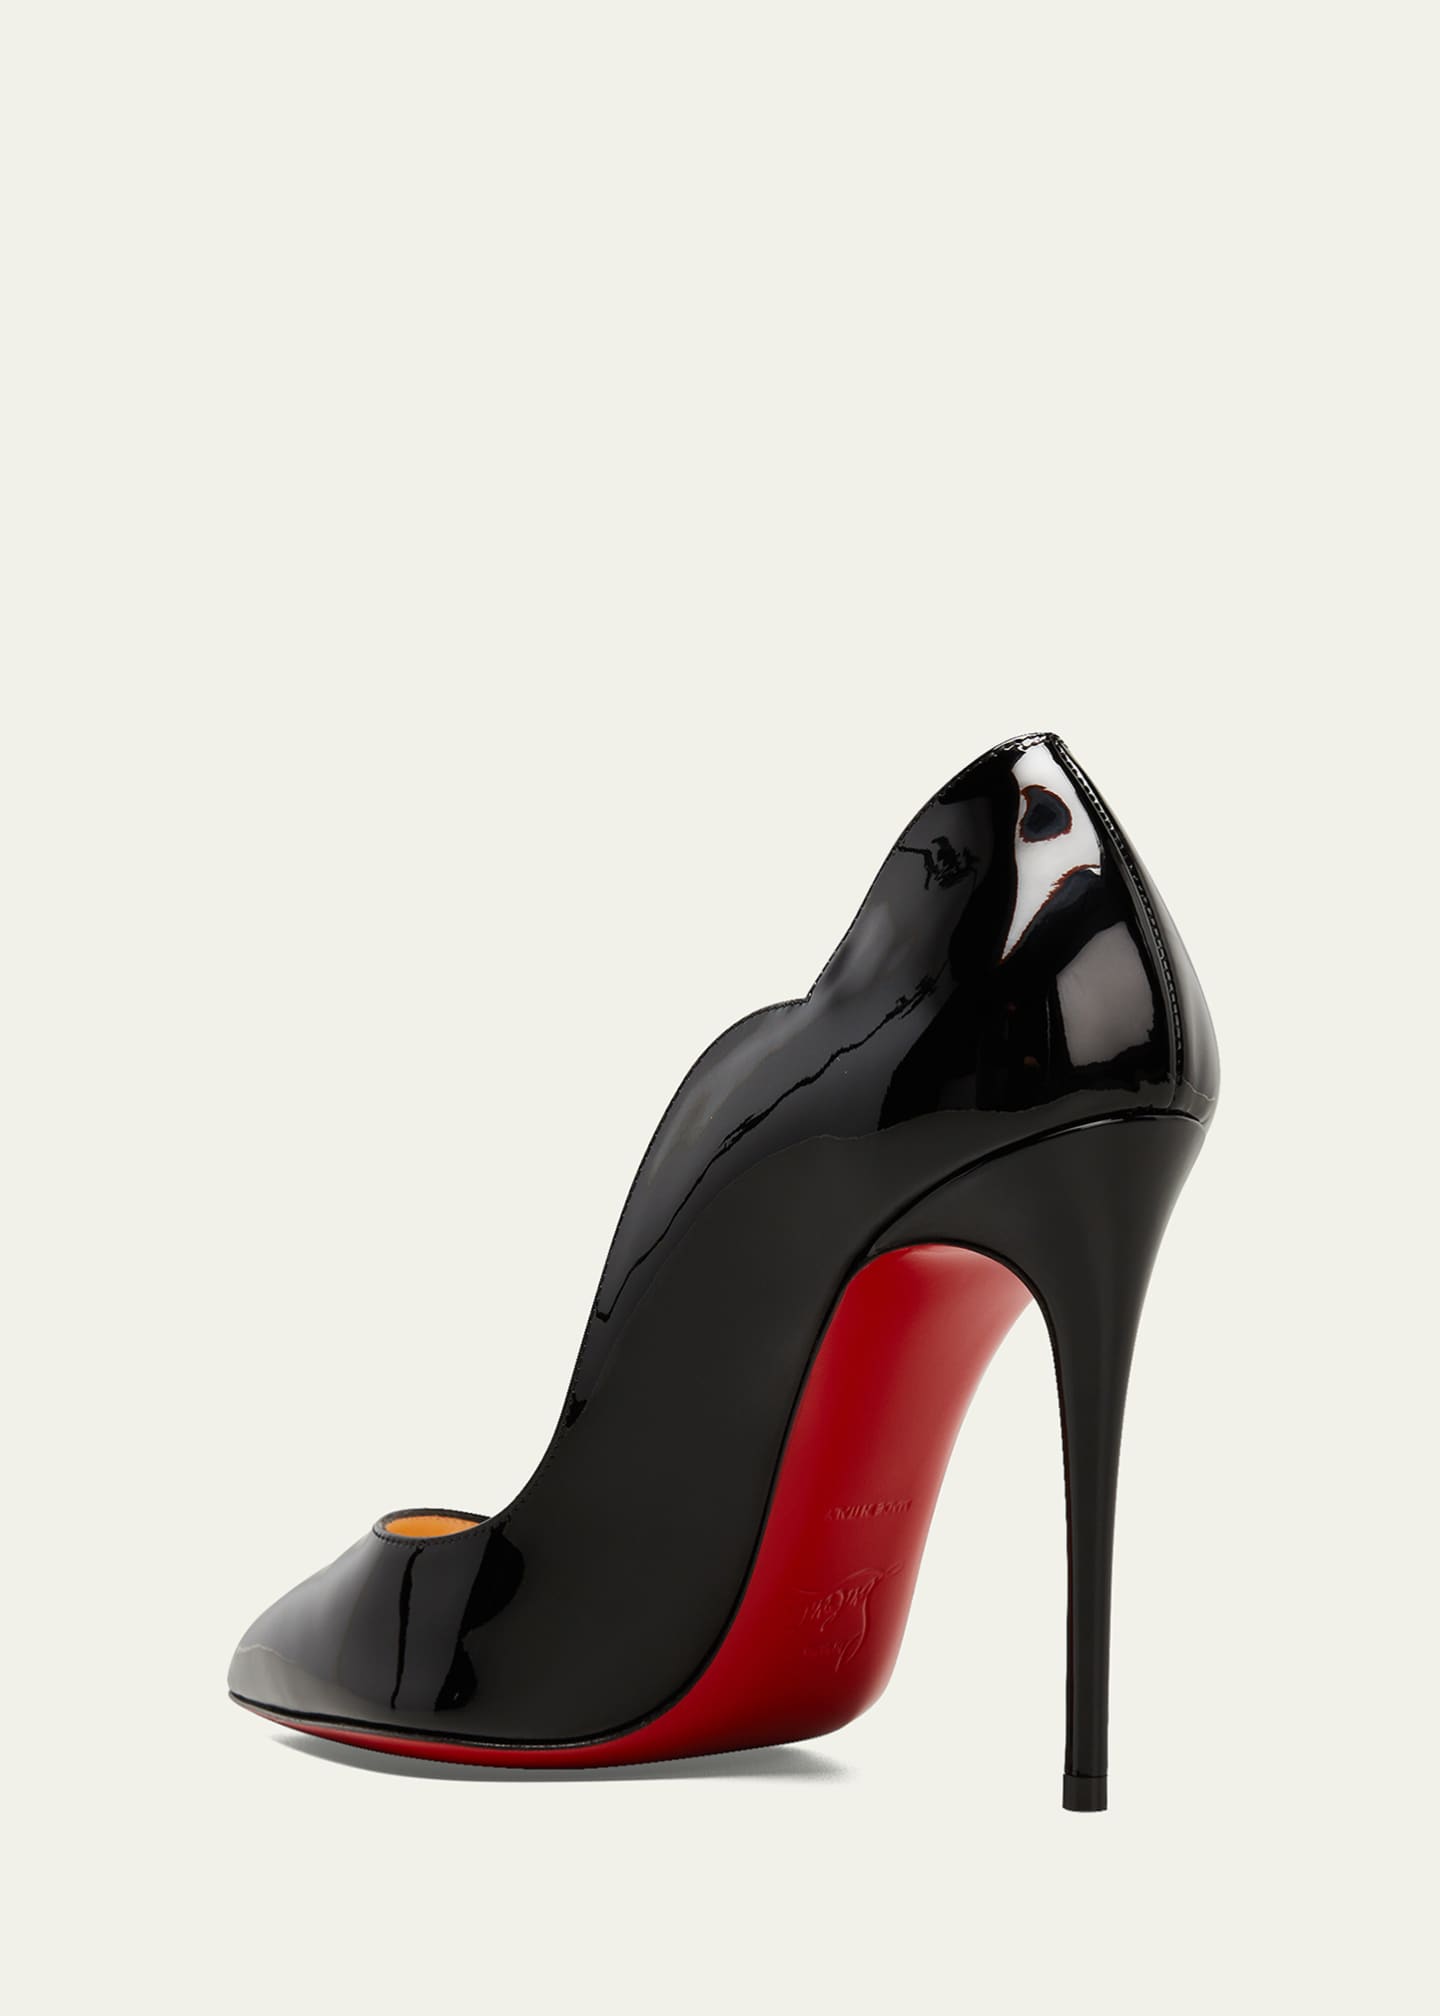 Black Stilettos Red Bottoms  Red Bottom Stiletto Heel Shoes